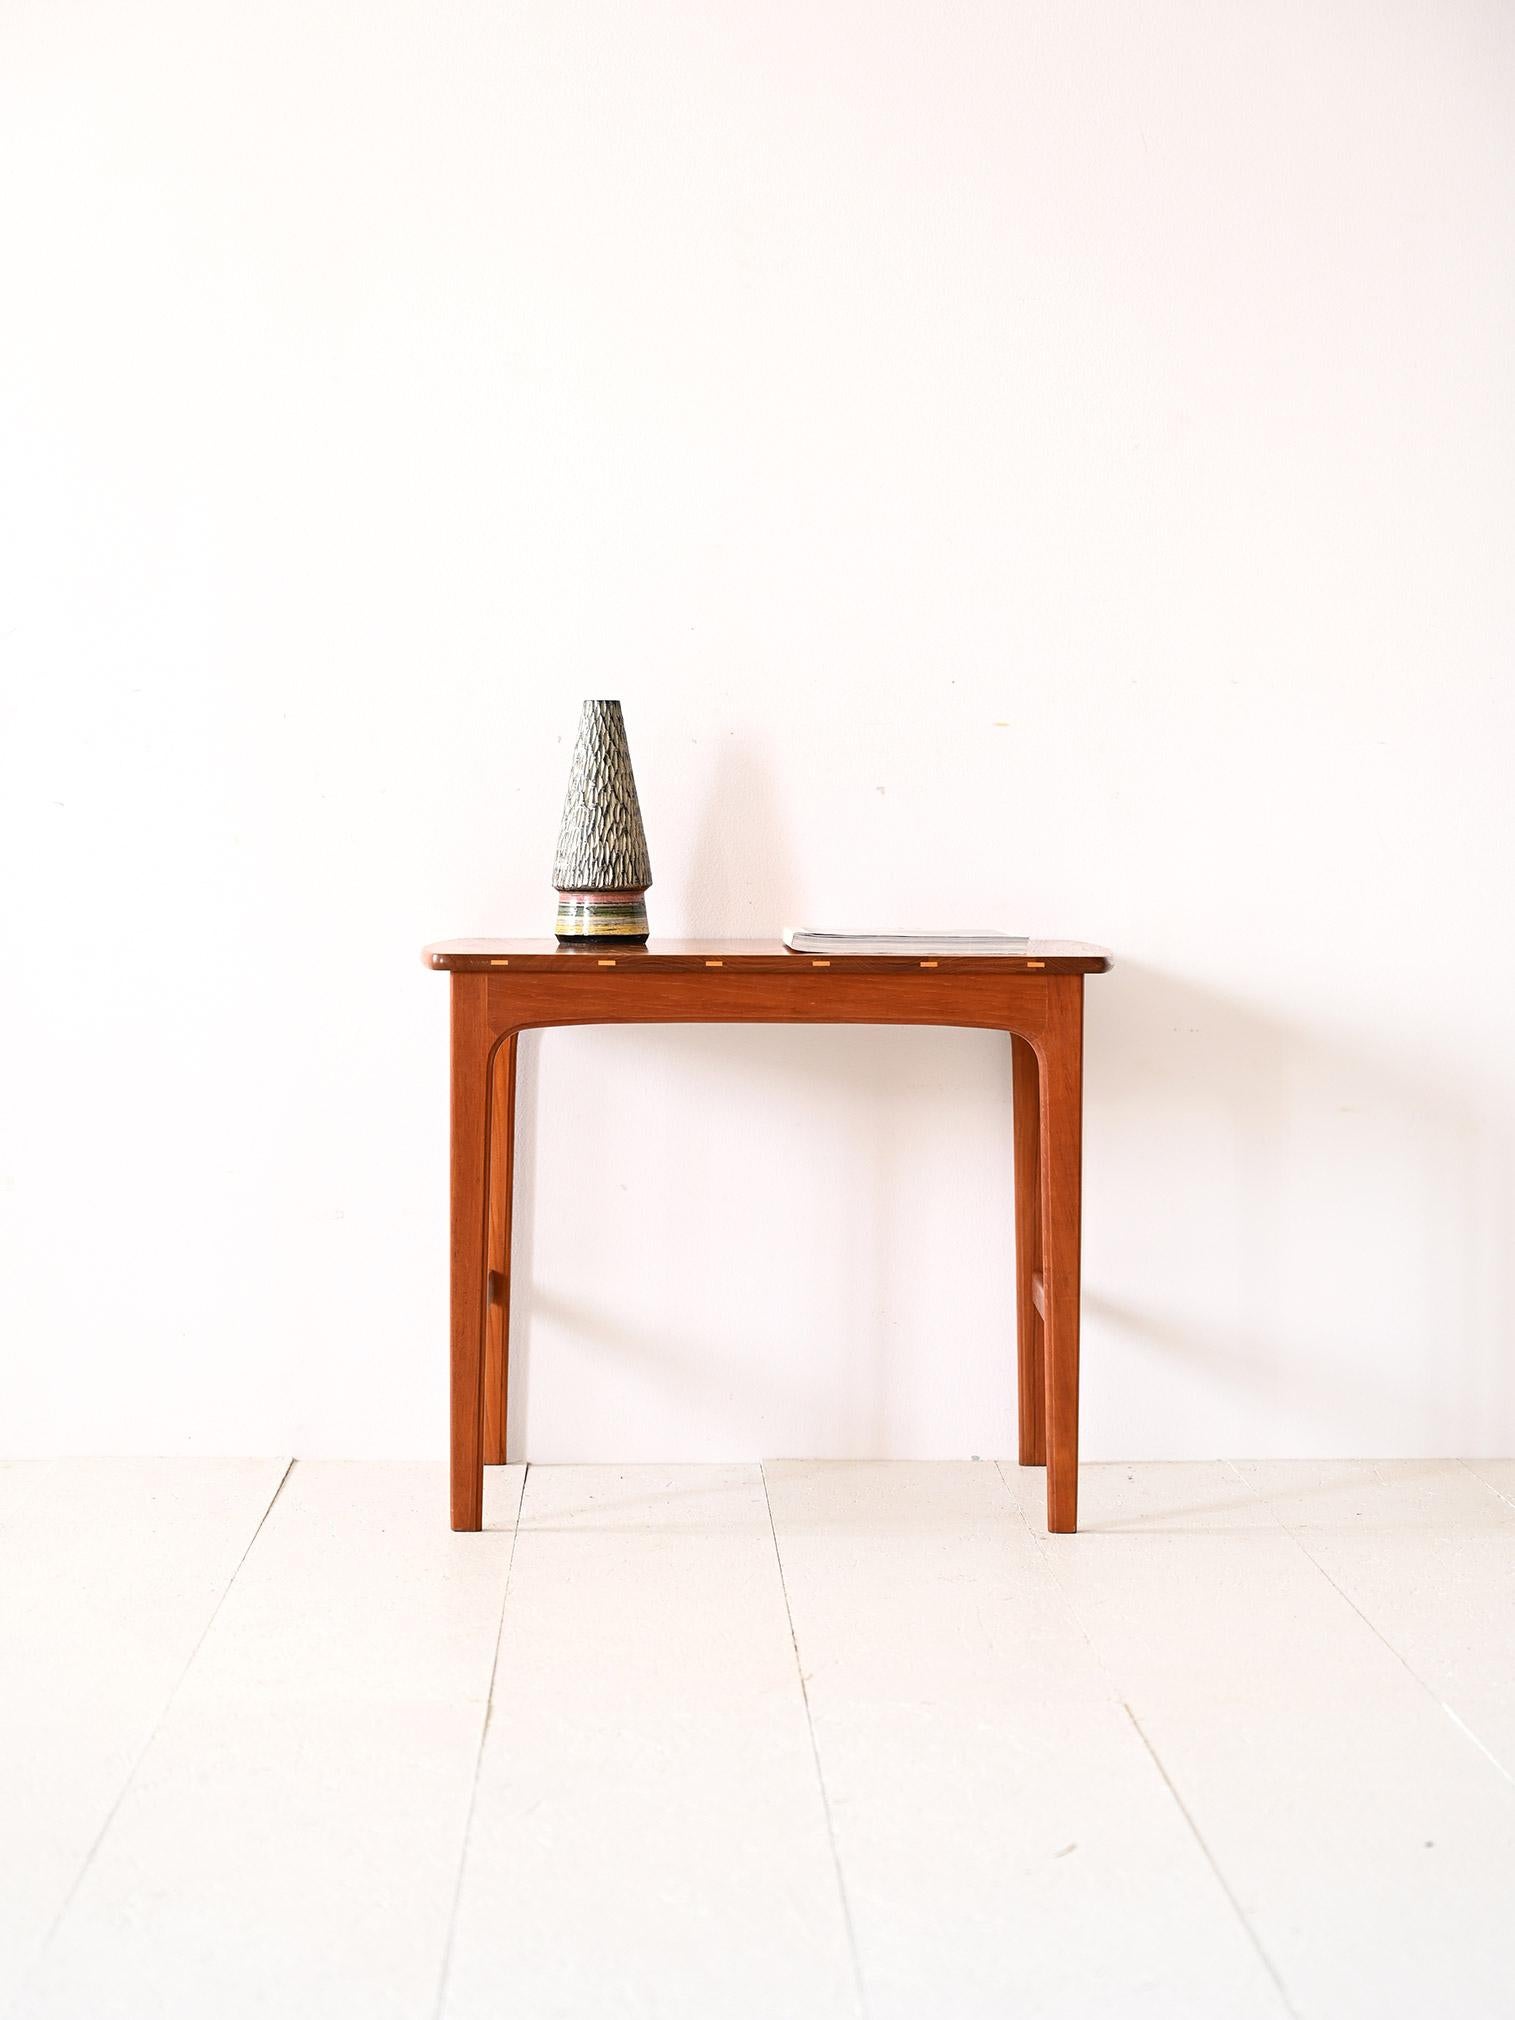 Tisch aus Teakholz aus den 1960er Jahren.

Ein elegantes Möbelstück von zeitloser Schönheit. Die essentiellen Linien und die sorgfältigen Details machen ihn zu einem Couchtisch, der jeden Raum mit Schlichtheit verschönern kann.
Seine Besonderheit